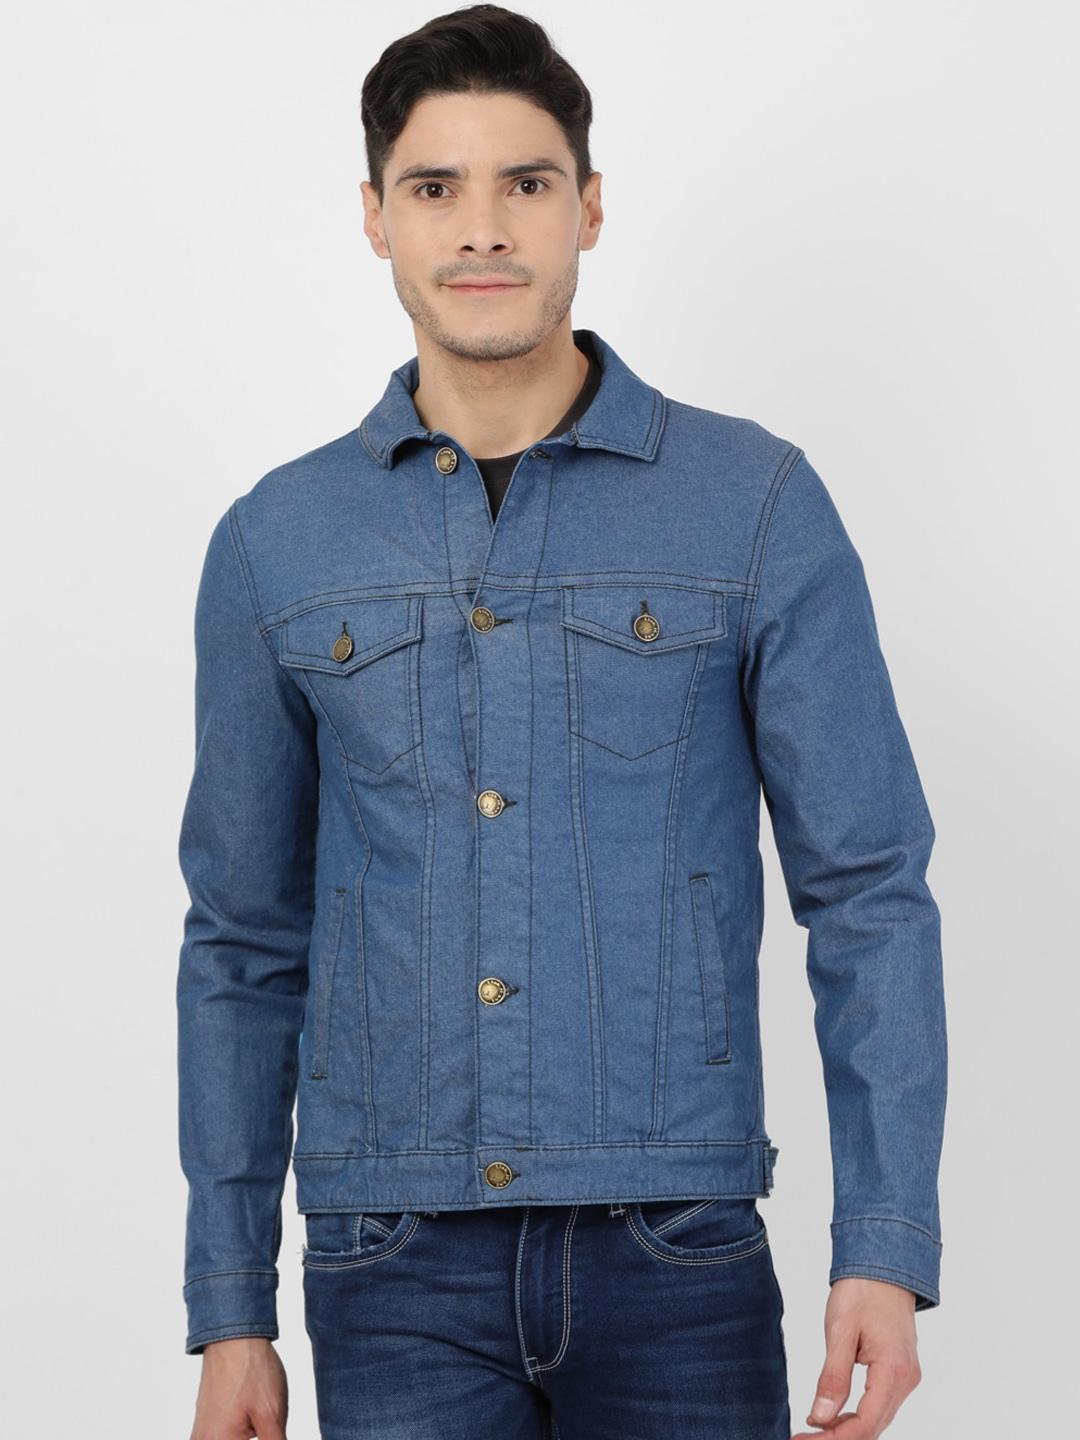 Llak Jeans Men Blue Denim Jacket with Patchwork